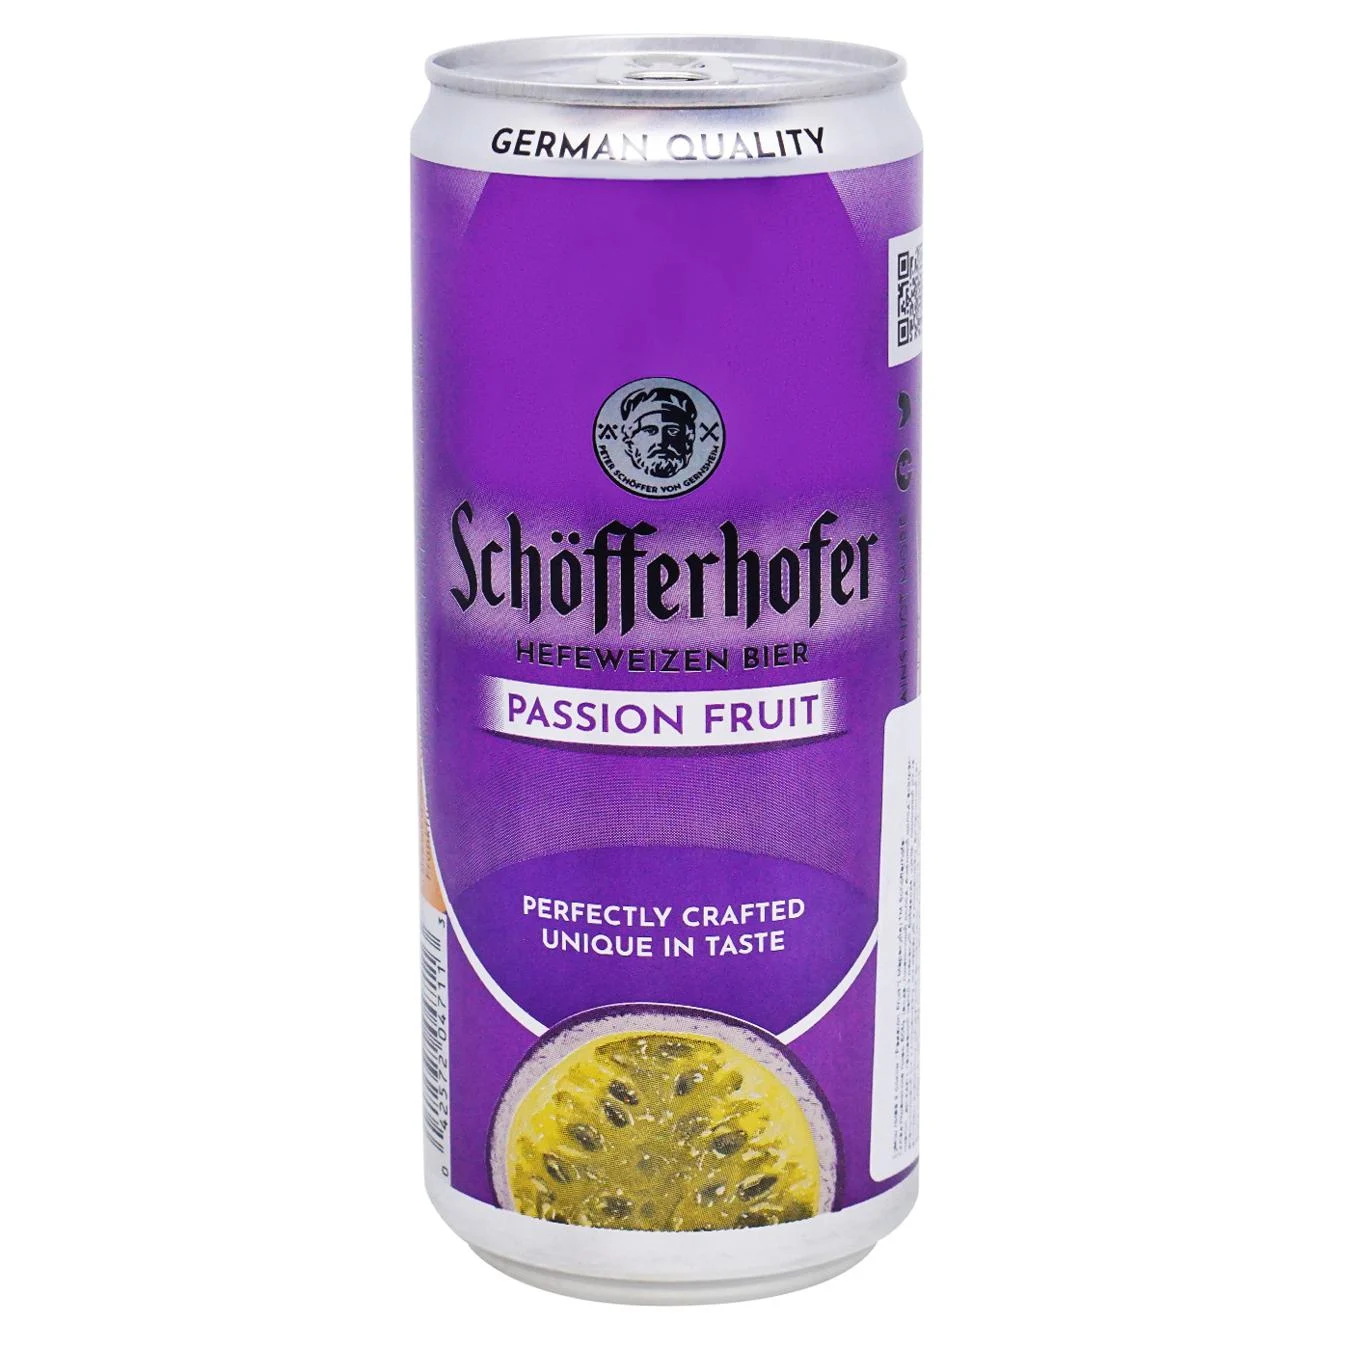 Пиво світле Schofferhofer зі смаком маракуйя 2,5% 0,33л залізна банка